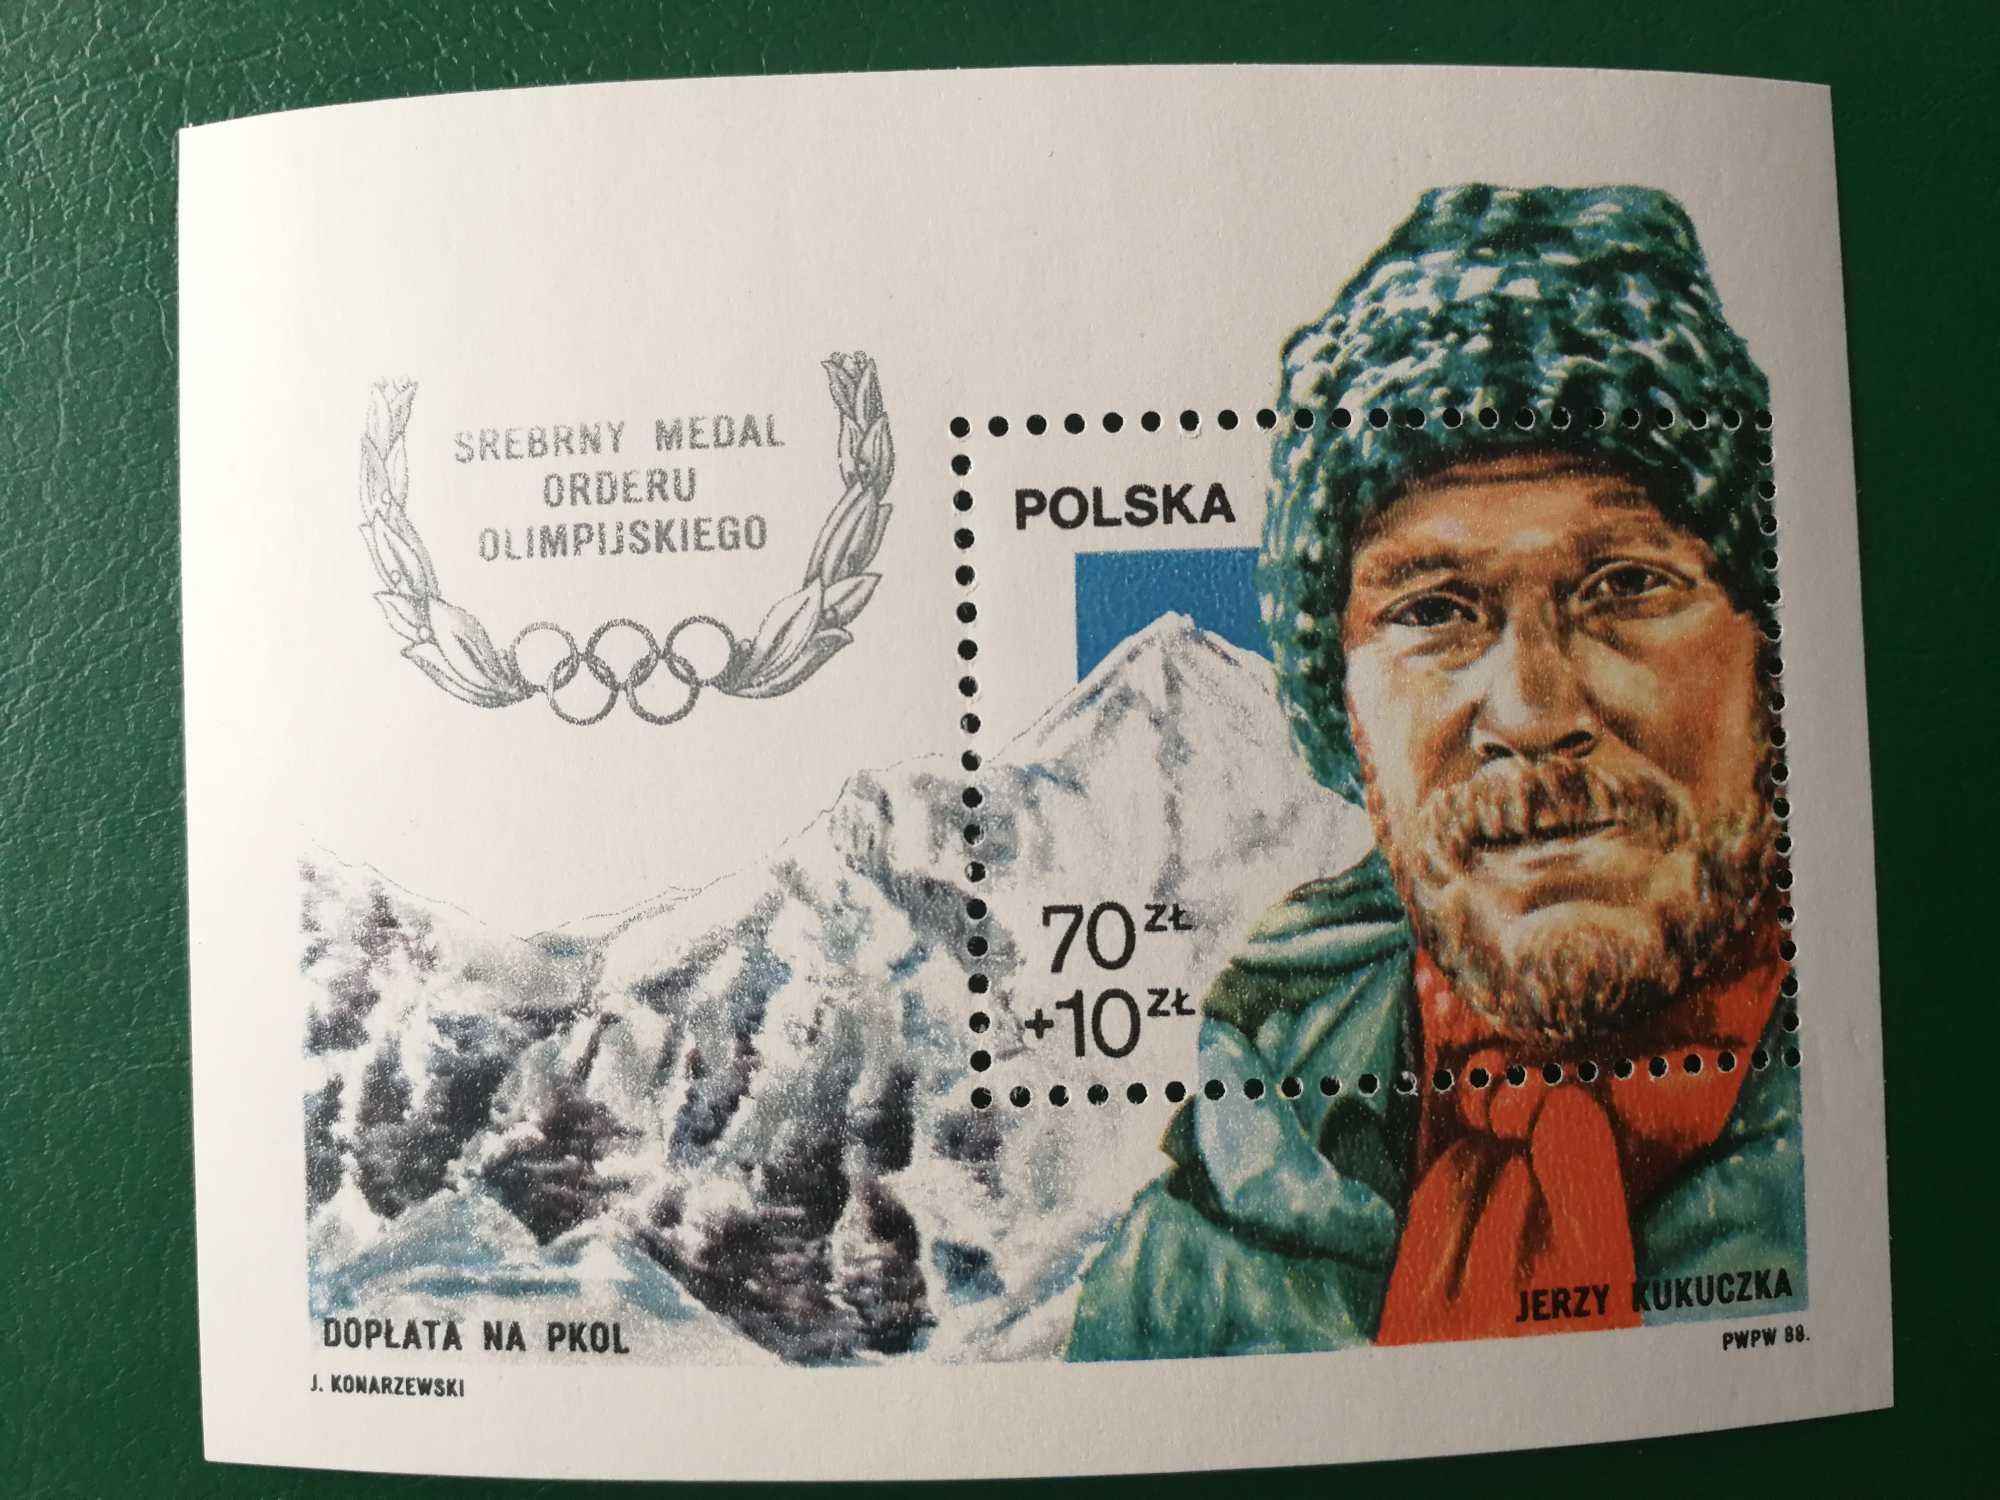 Znaczek sportowy Polska legenda alpinizmu Jerzy Kukuczka blok